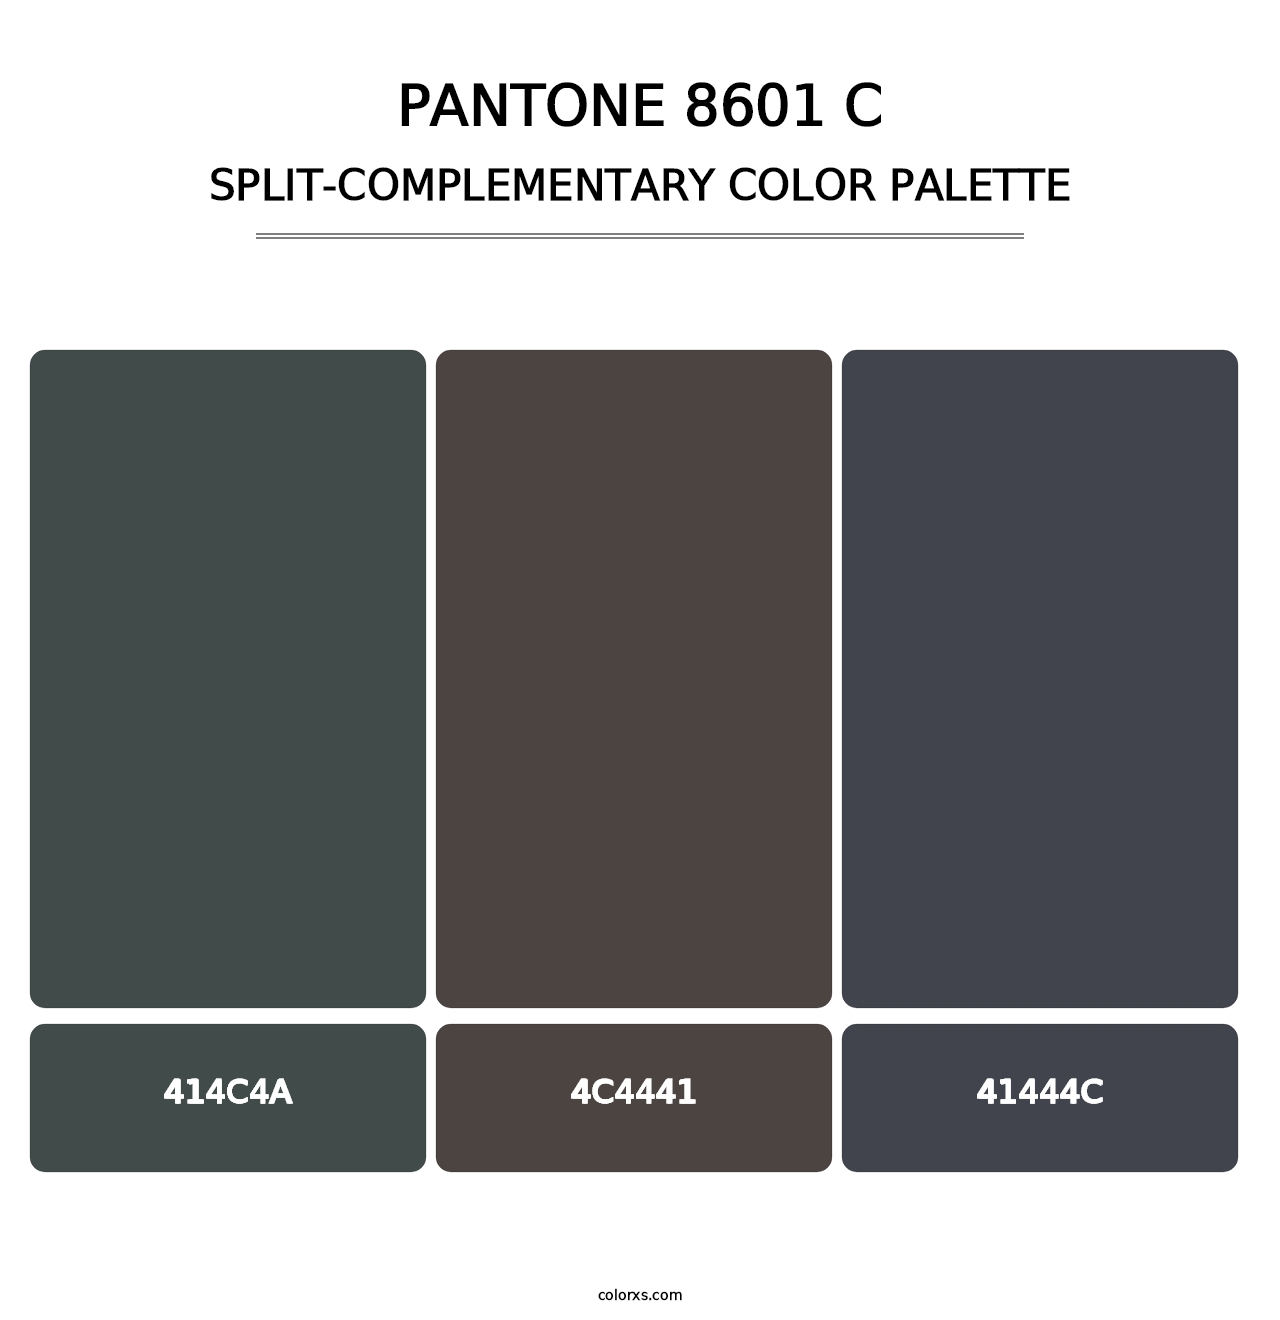 PANTONE 8601 C - Split-Complementary Color Palette